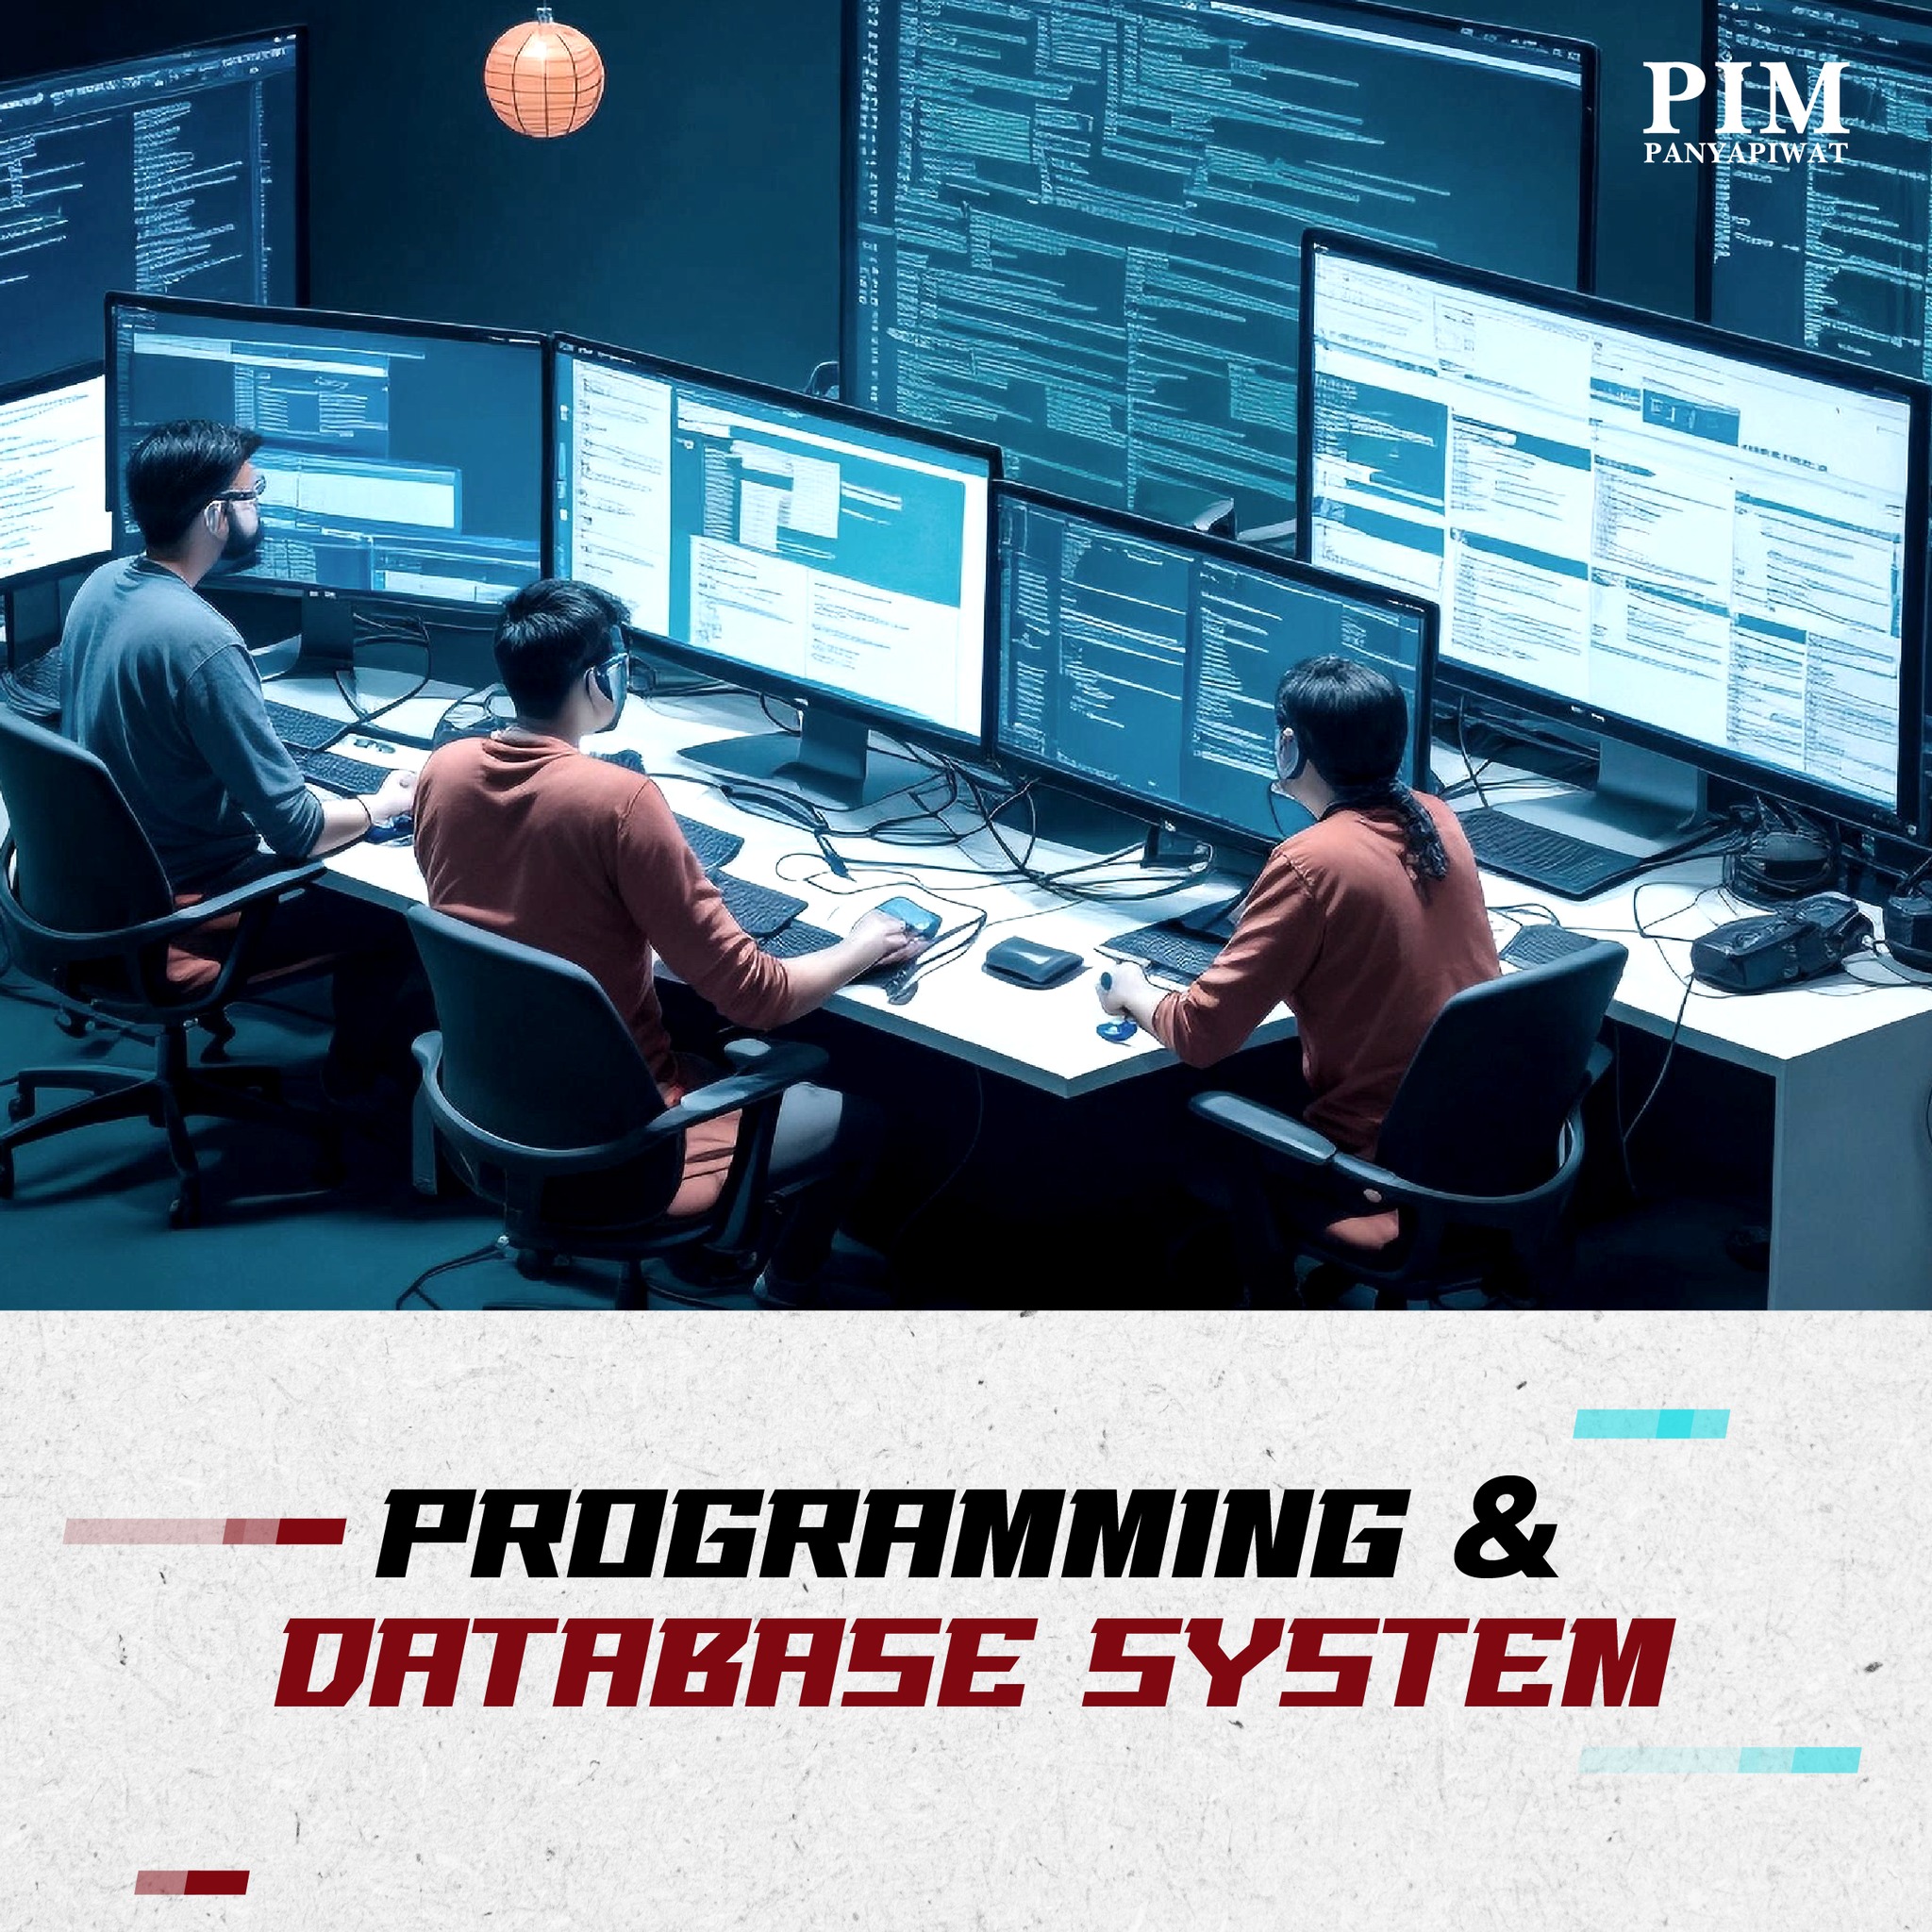 ฝึกฝนทักษะการเขียนโปรแกรม ทดสอบโปรแกรมในเว็บไซต์และแอพพลิเคชั่นต่างๆ และเรียนรู้การจัดการระบบฐานข้อมูล (Database System) ออกแบบฐานข้อมูลด้วยเทคนิคต่างๆ ไปจนถึงการวิเคราะห์ข้อมูลขนาดใหญ่ (Big Data) เพื่อนำไปใช้ในเชิงธุรกิจ